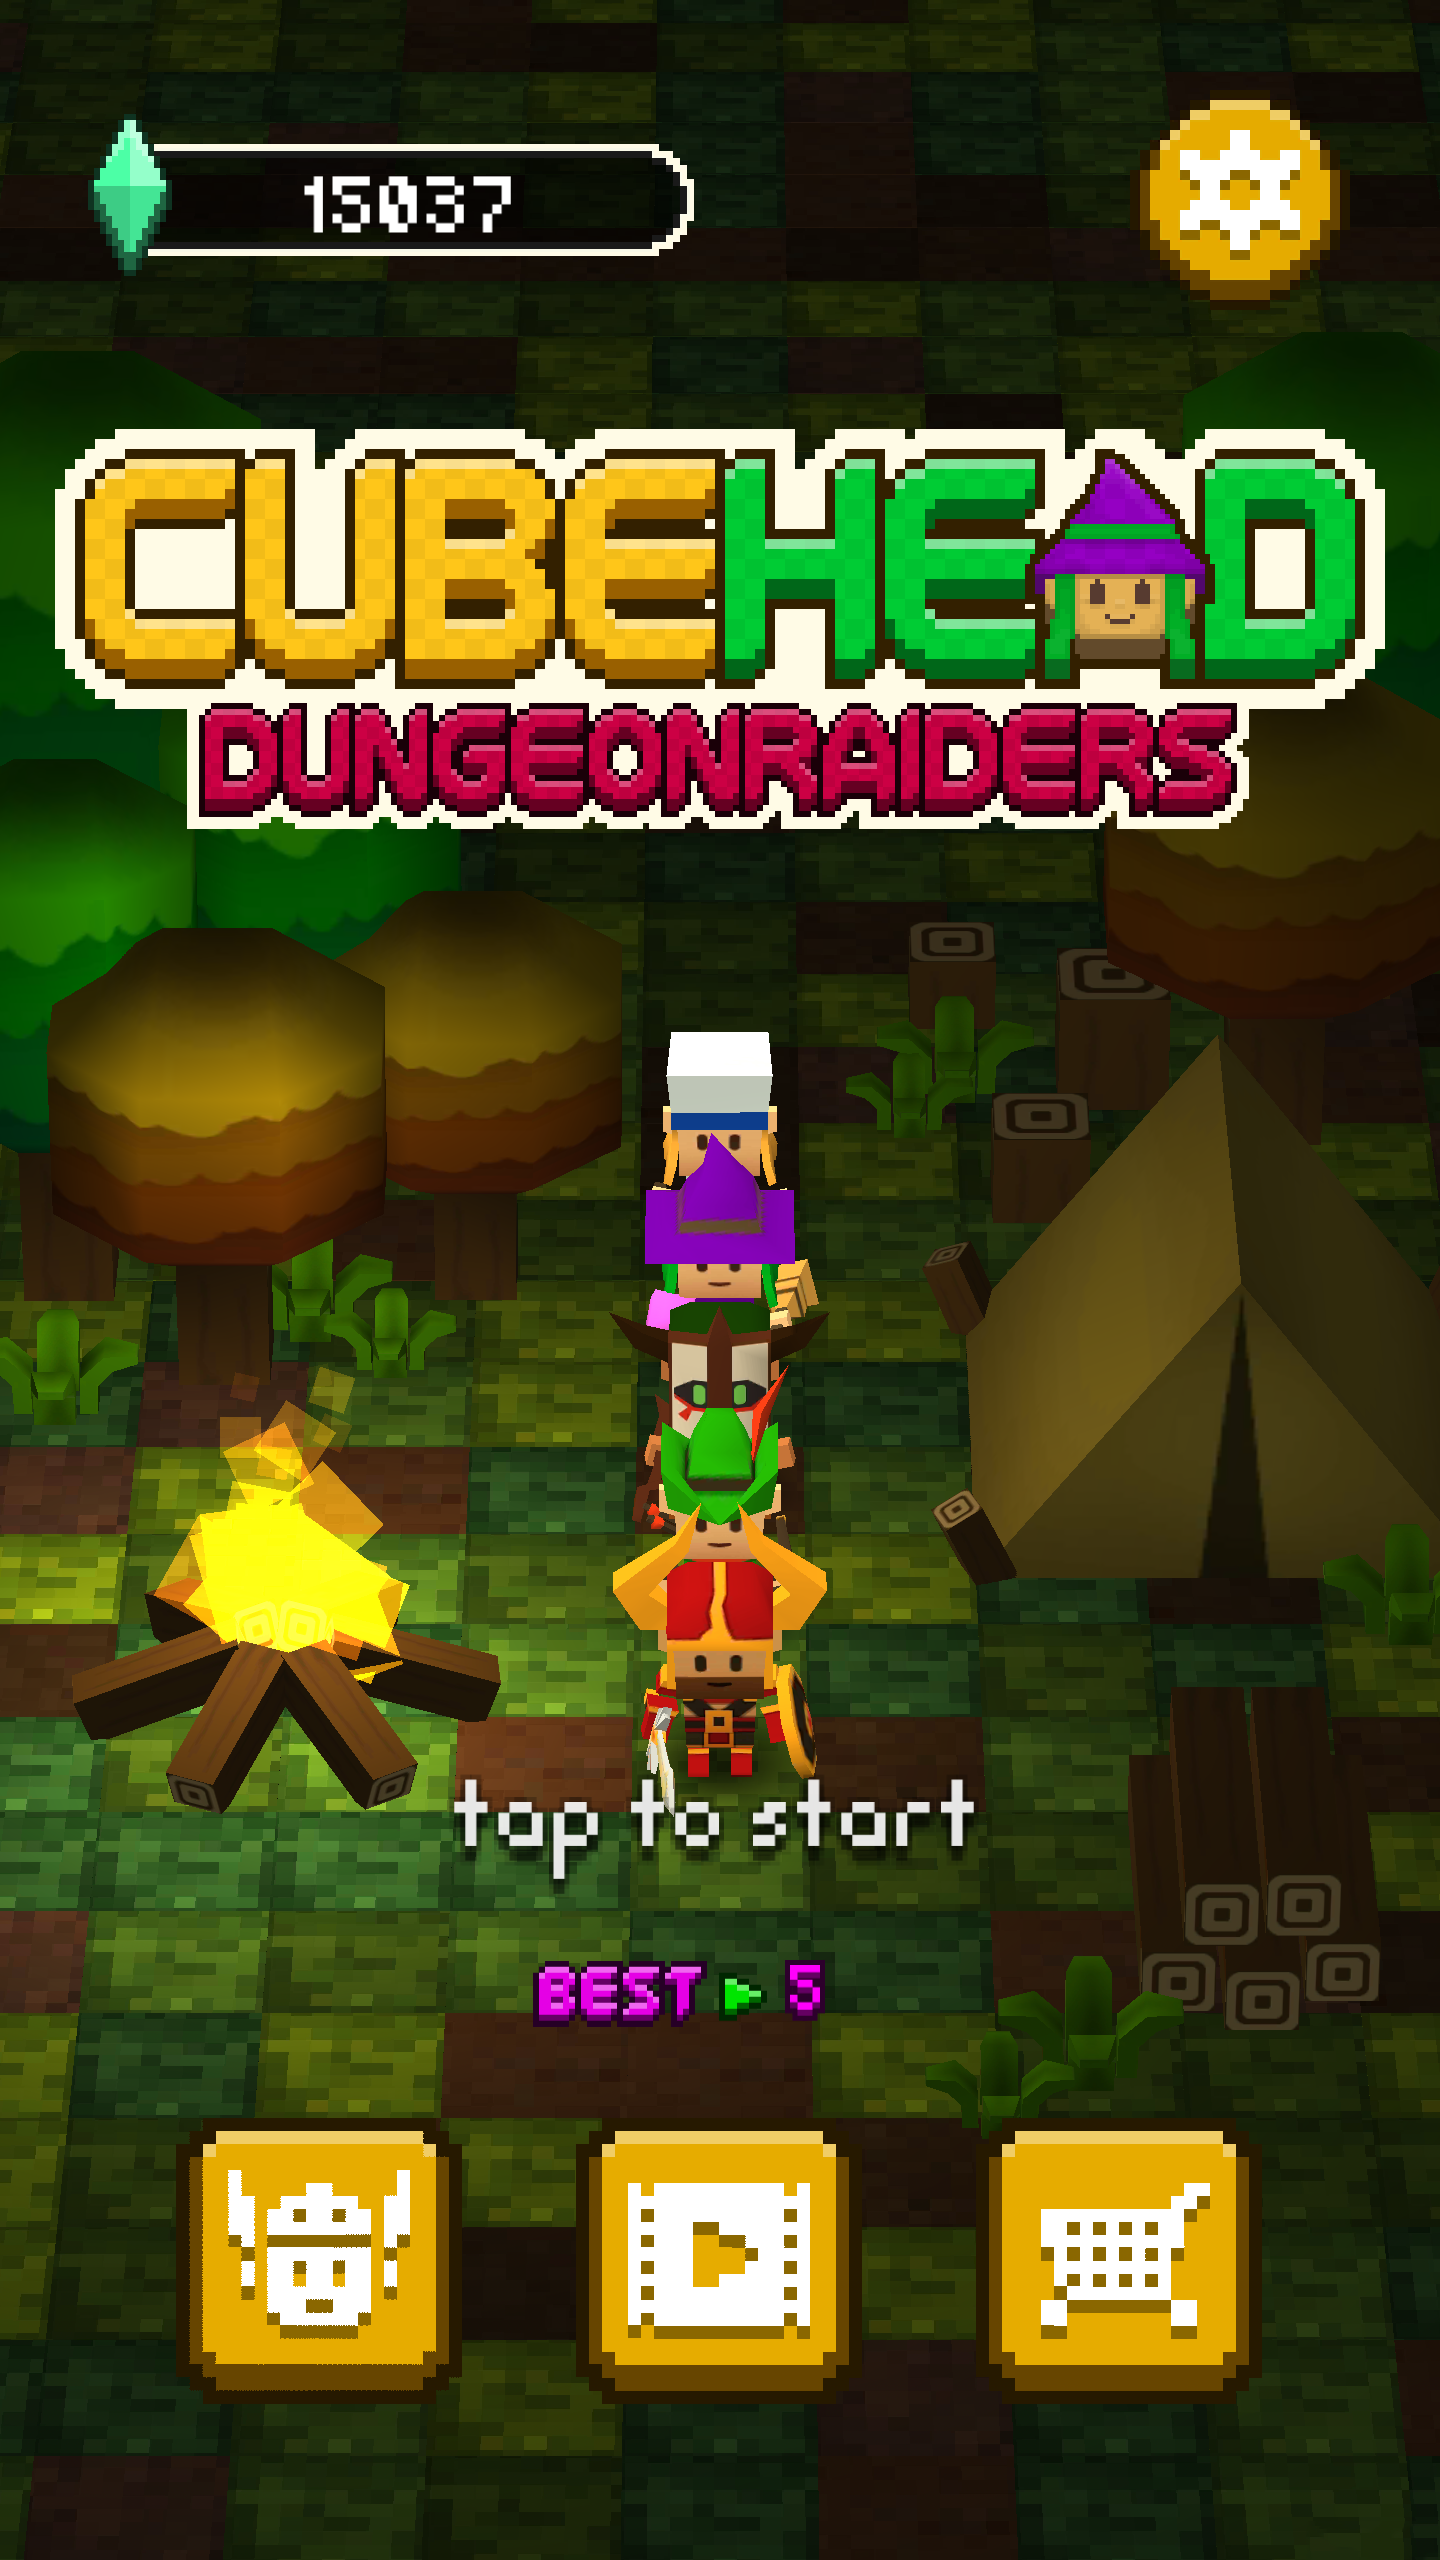 Screenshot 1 of Cabeza de cubo - Dungeon Raiders 1.3.5